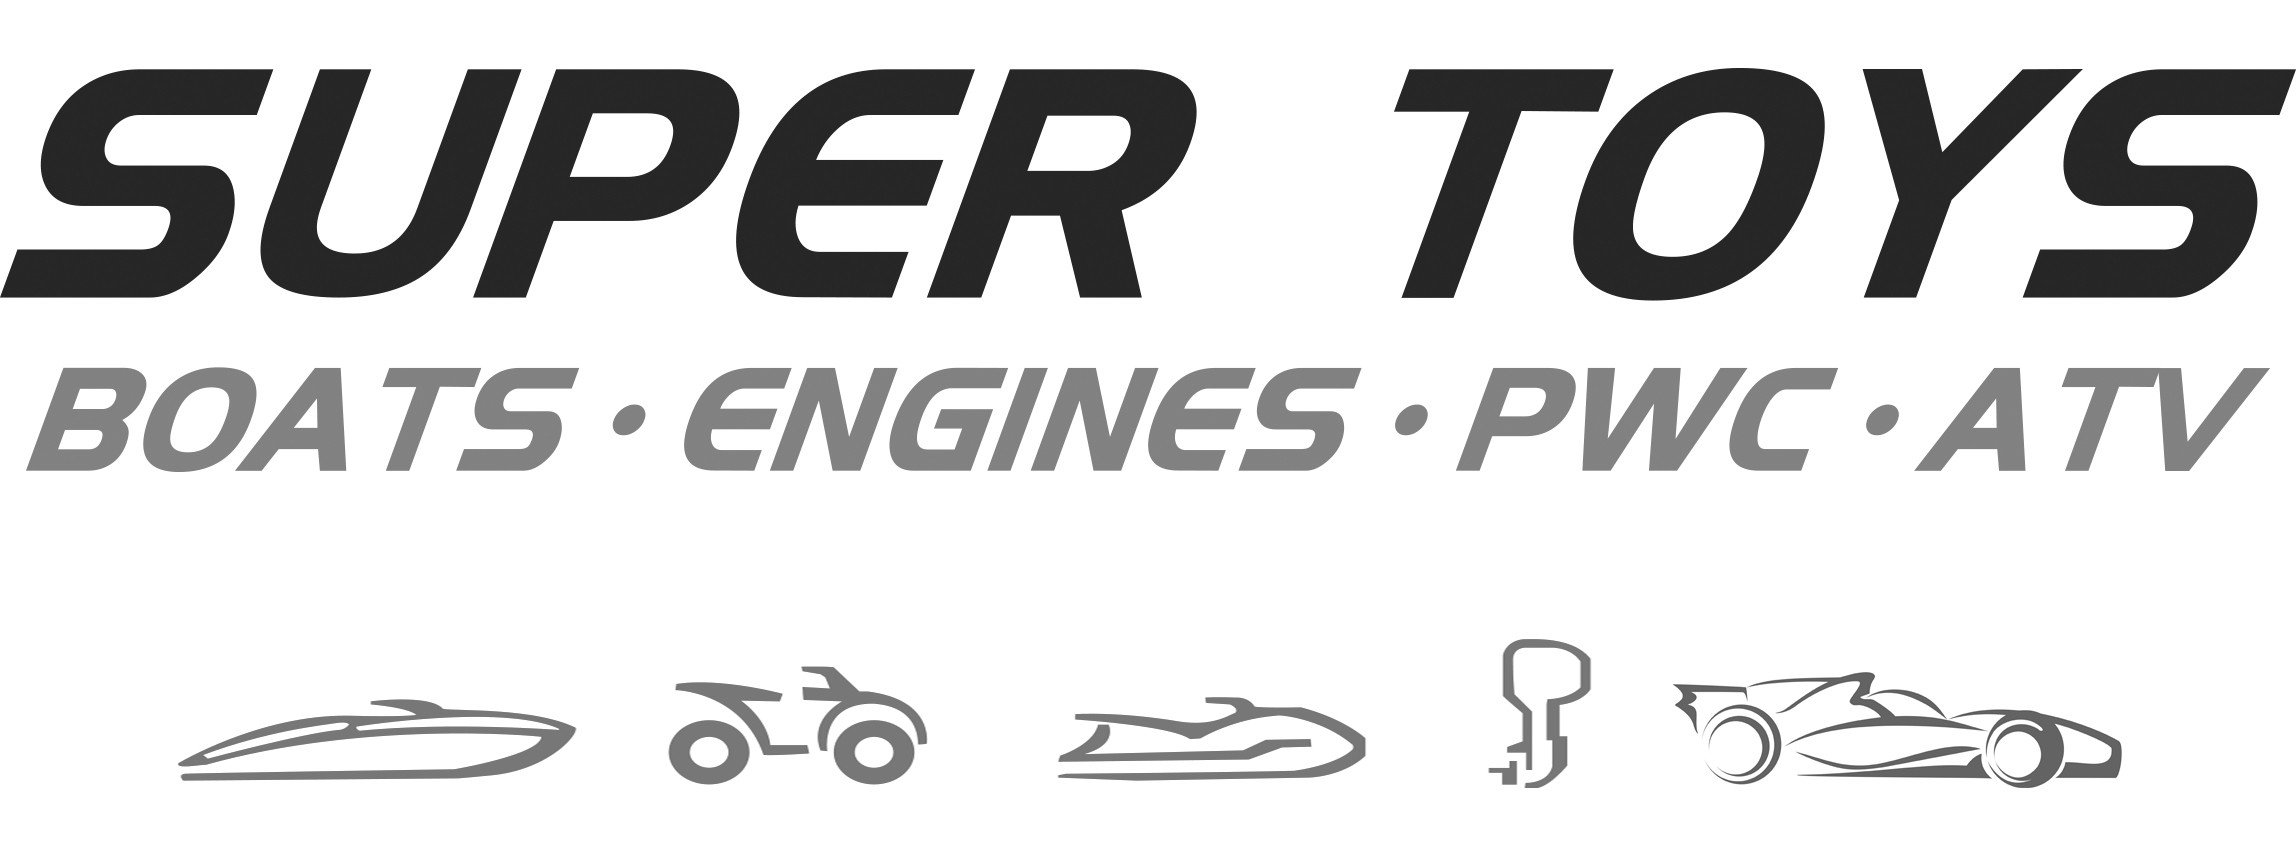 super-toys-logo-2020.jpg